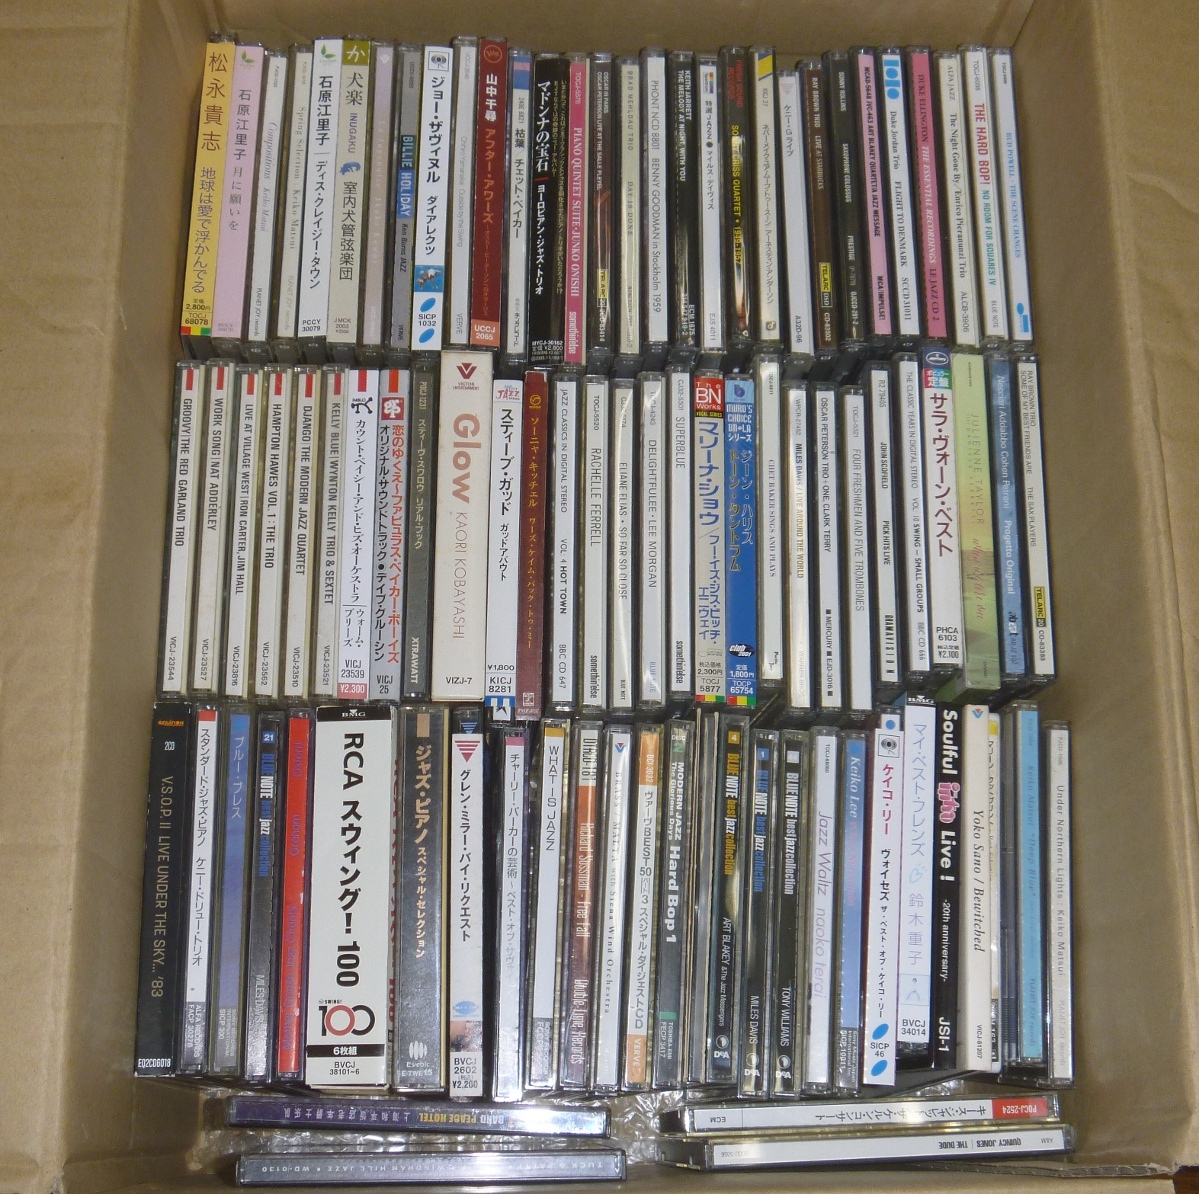 ジャズ関連CD 国内盤・輸入盤 約90枚まとめて 和ジャズ・フュージョン・ヴォーカル・オムニバス盤・セットCDの一部など含む JAZZの画像1